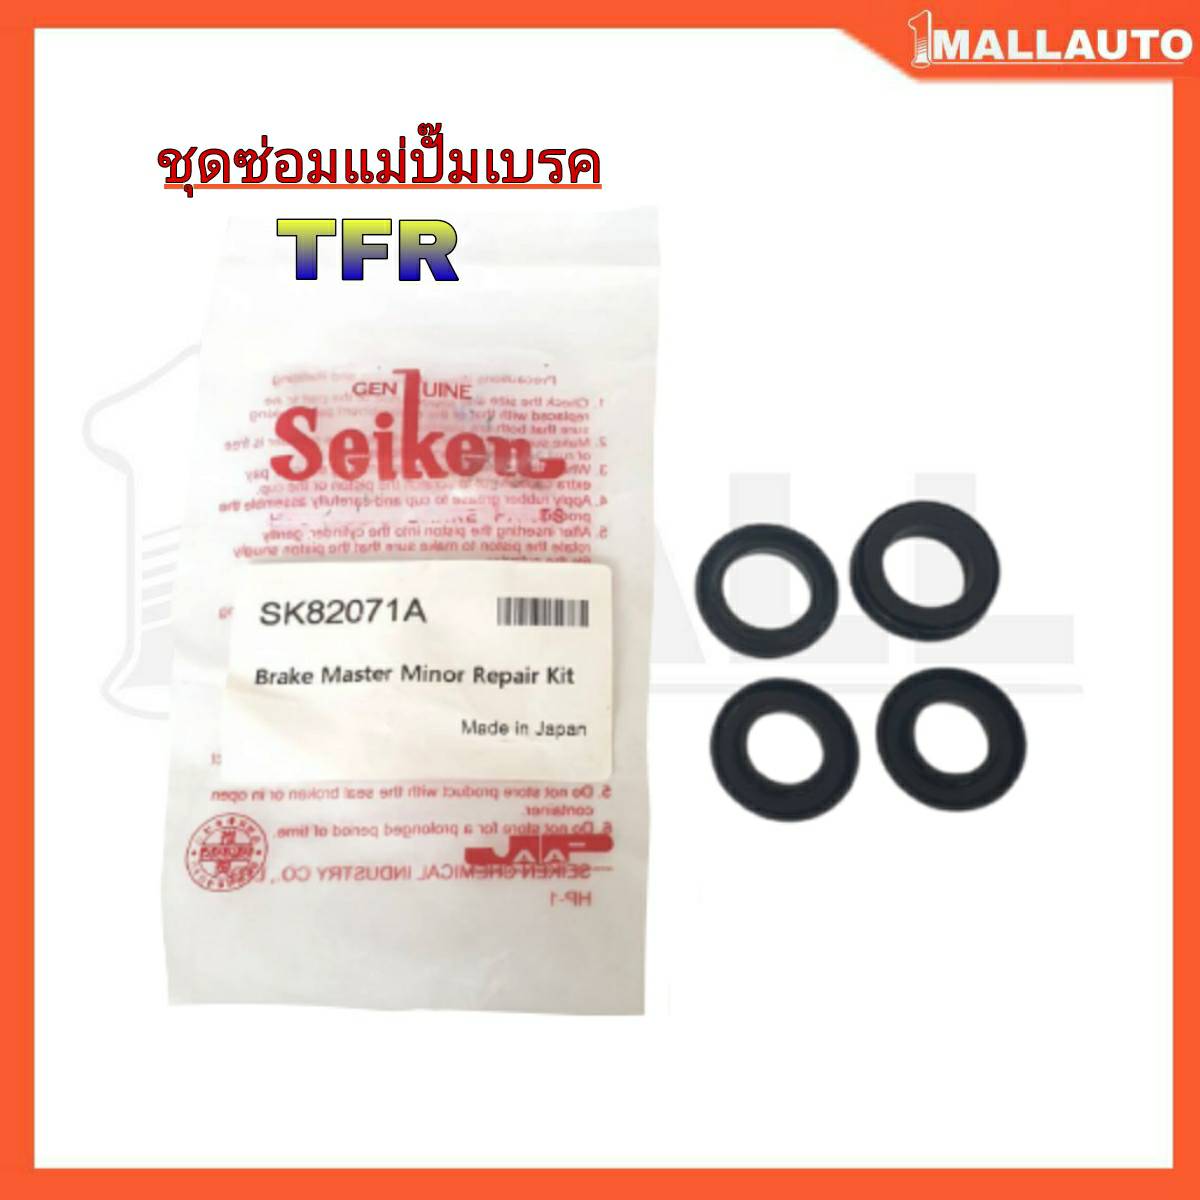 ชุดซ่อม แม่ปั๊มเบรค ISUZU TFR ( ยี่ห้อ Seiken ) SK-82071A 1ชุด 4ตัว 15/16